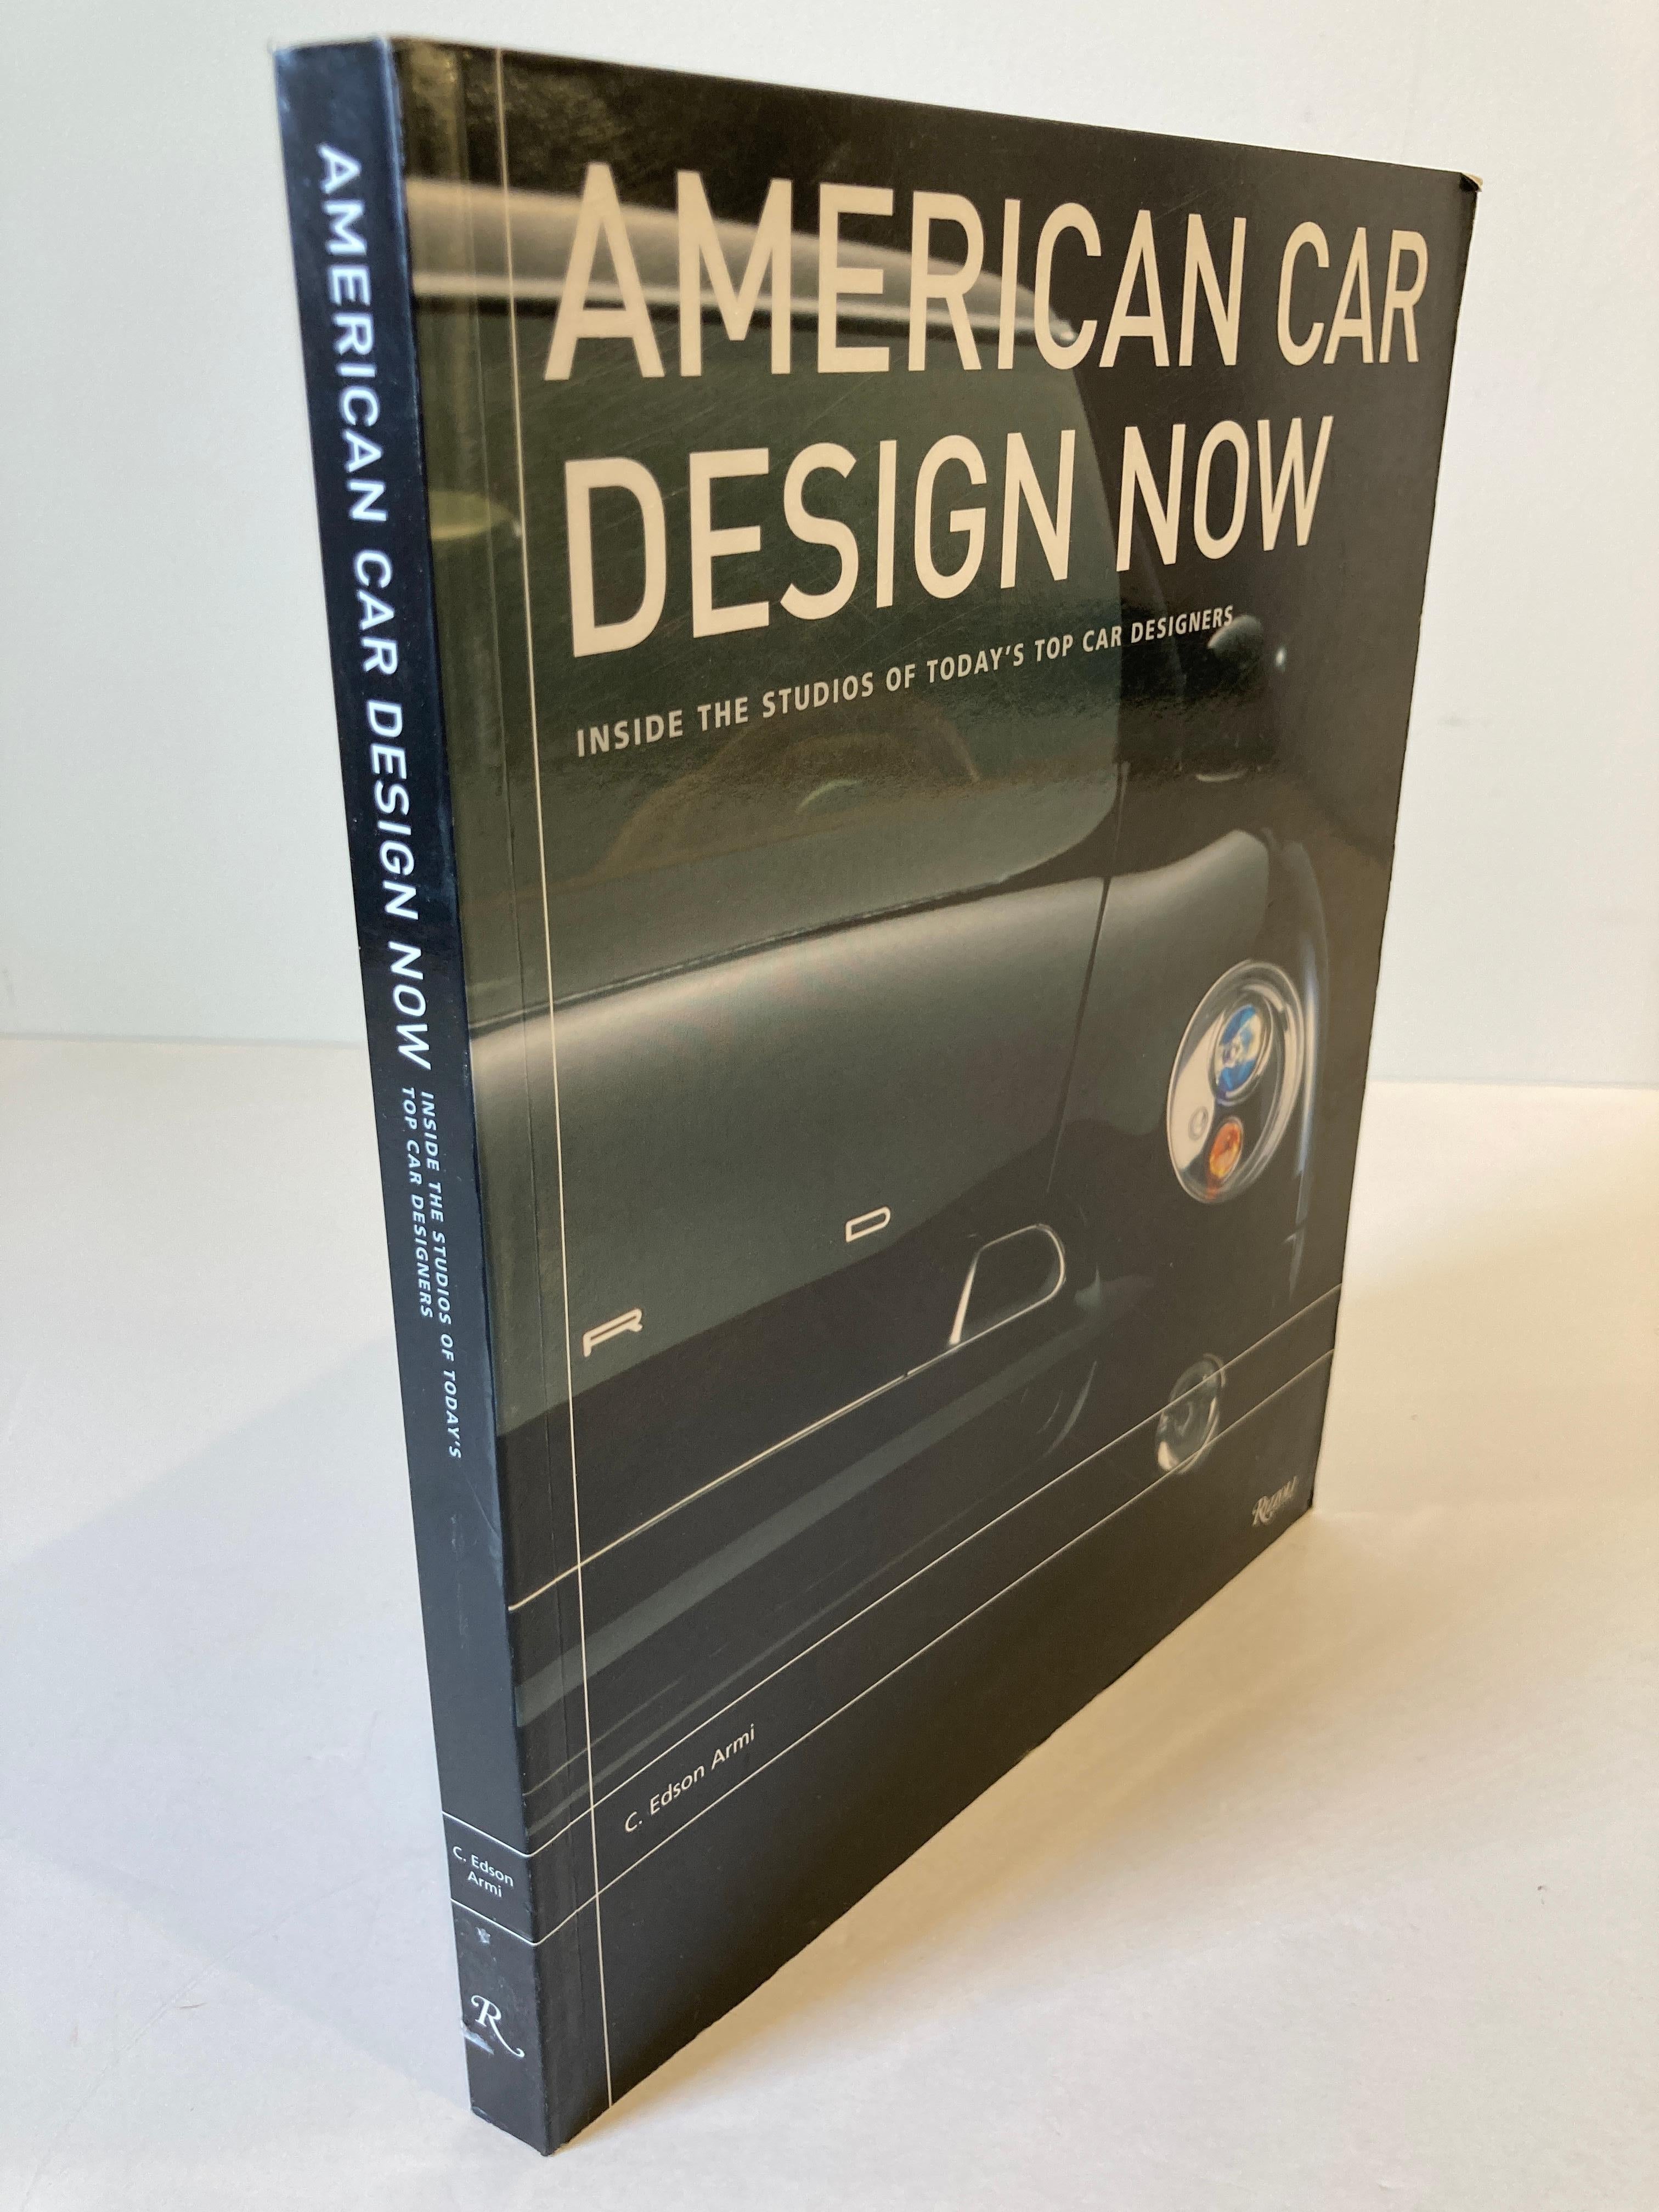 American Car Design Now: Einblicke in die Studios von Amerikas Top-Autodesignern
von C. Edson Armi.
Dieser Titel bietet eine eingehende Untersuchung des kreativen Prozesses hinter mehr als 30 zeitgenössischen Modellen, die die Trends der Zukunft